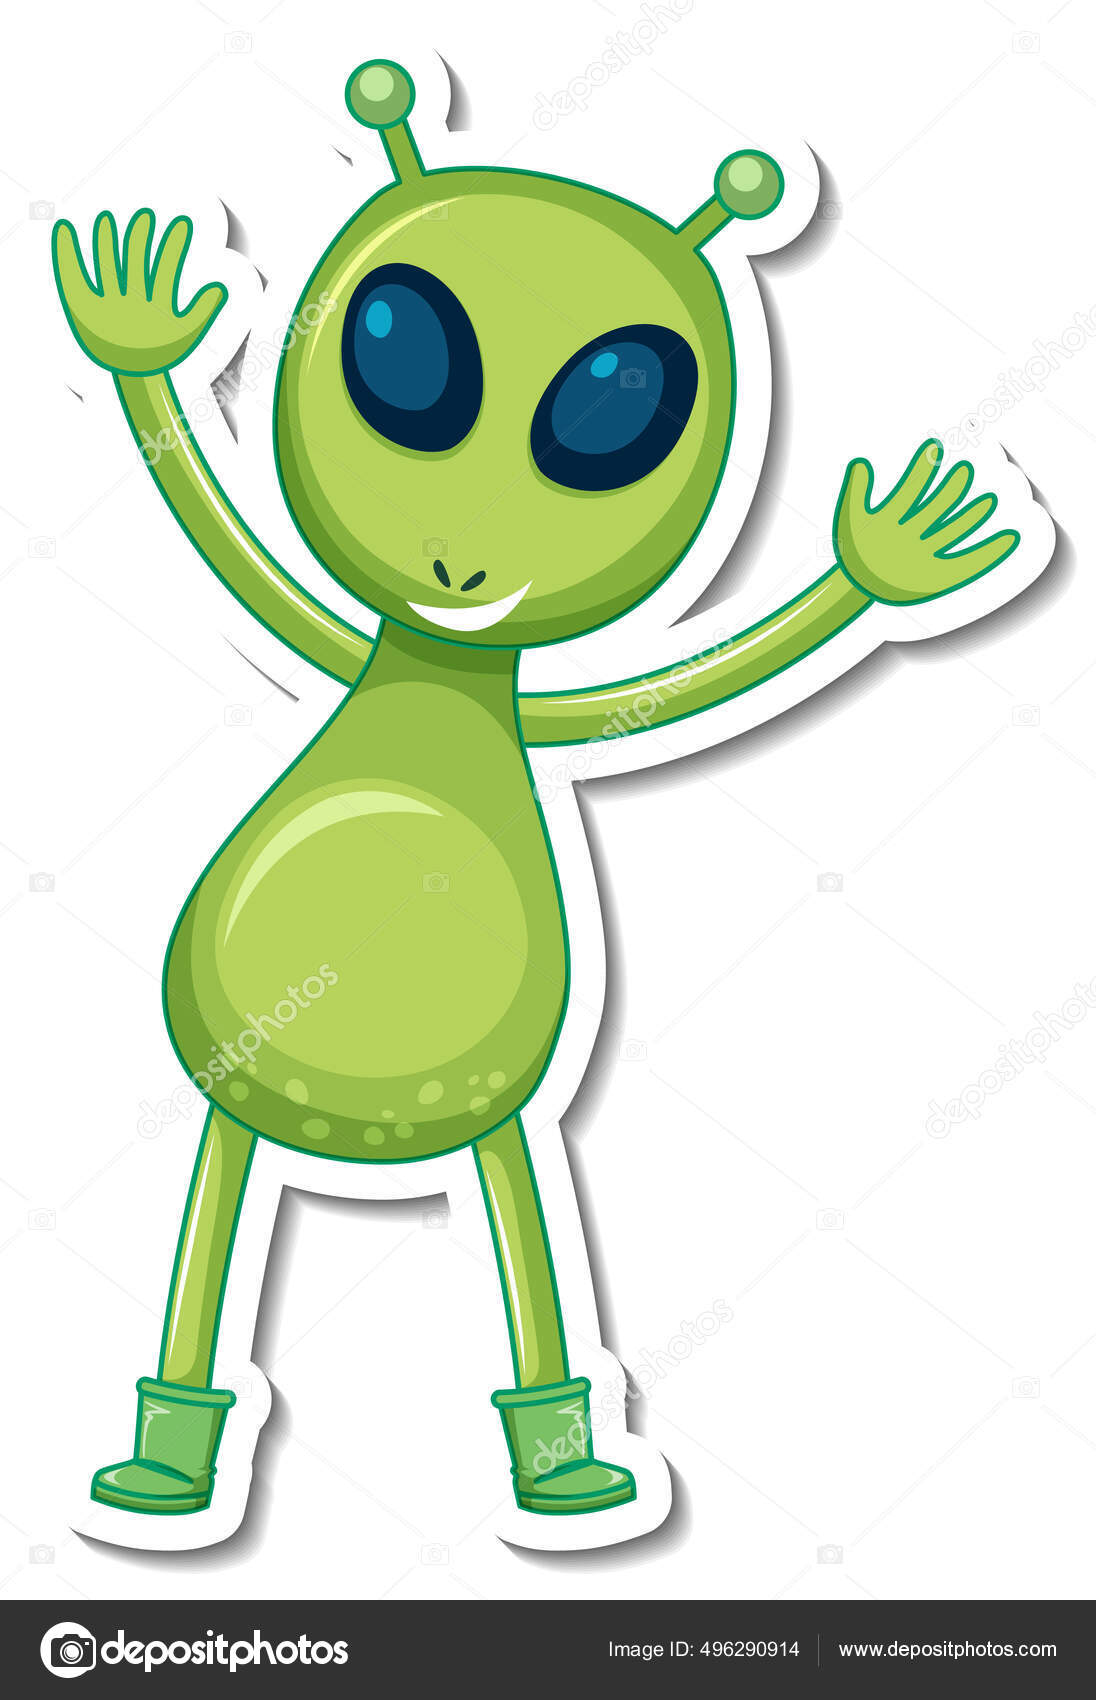 Um personagem de desenho animado com as palavras alien no meio